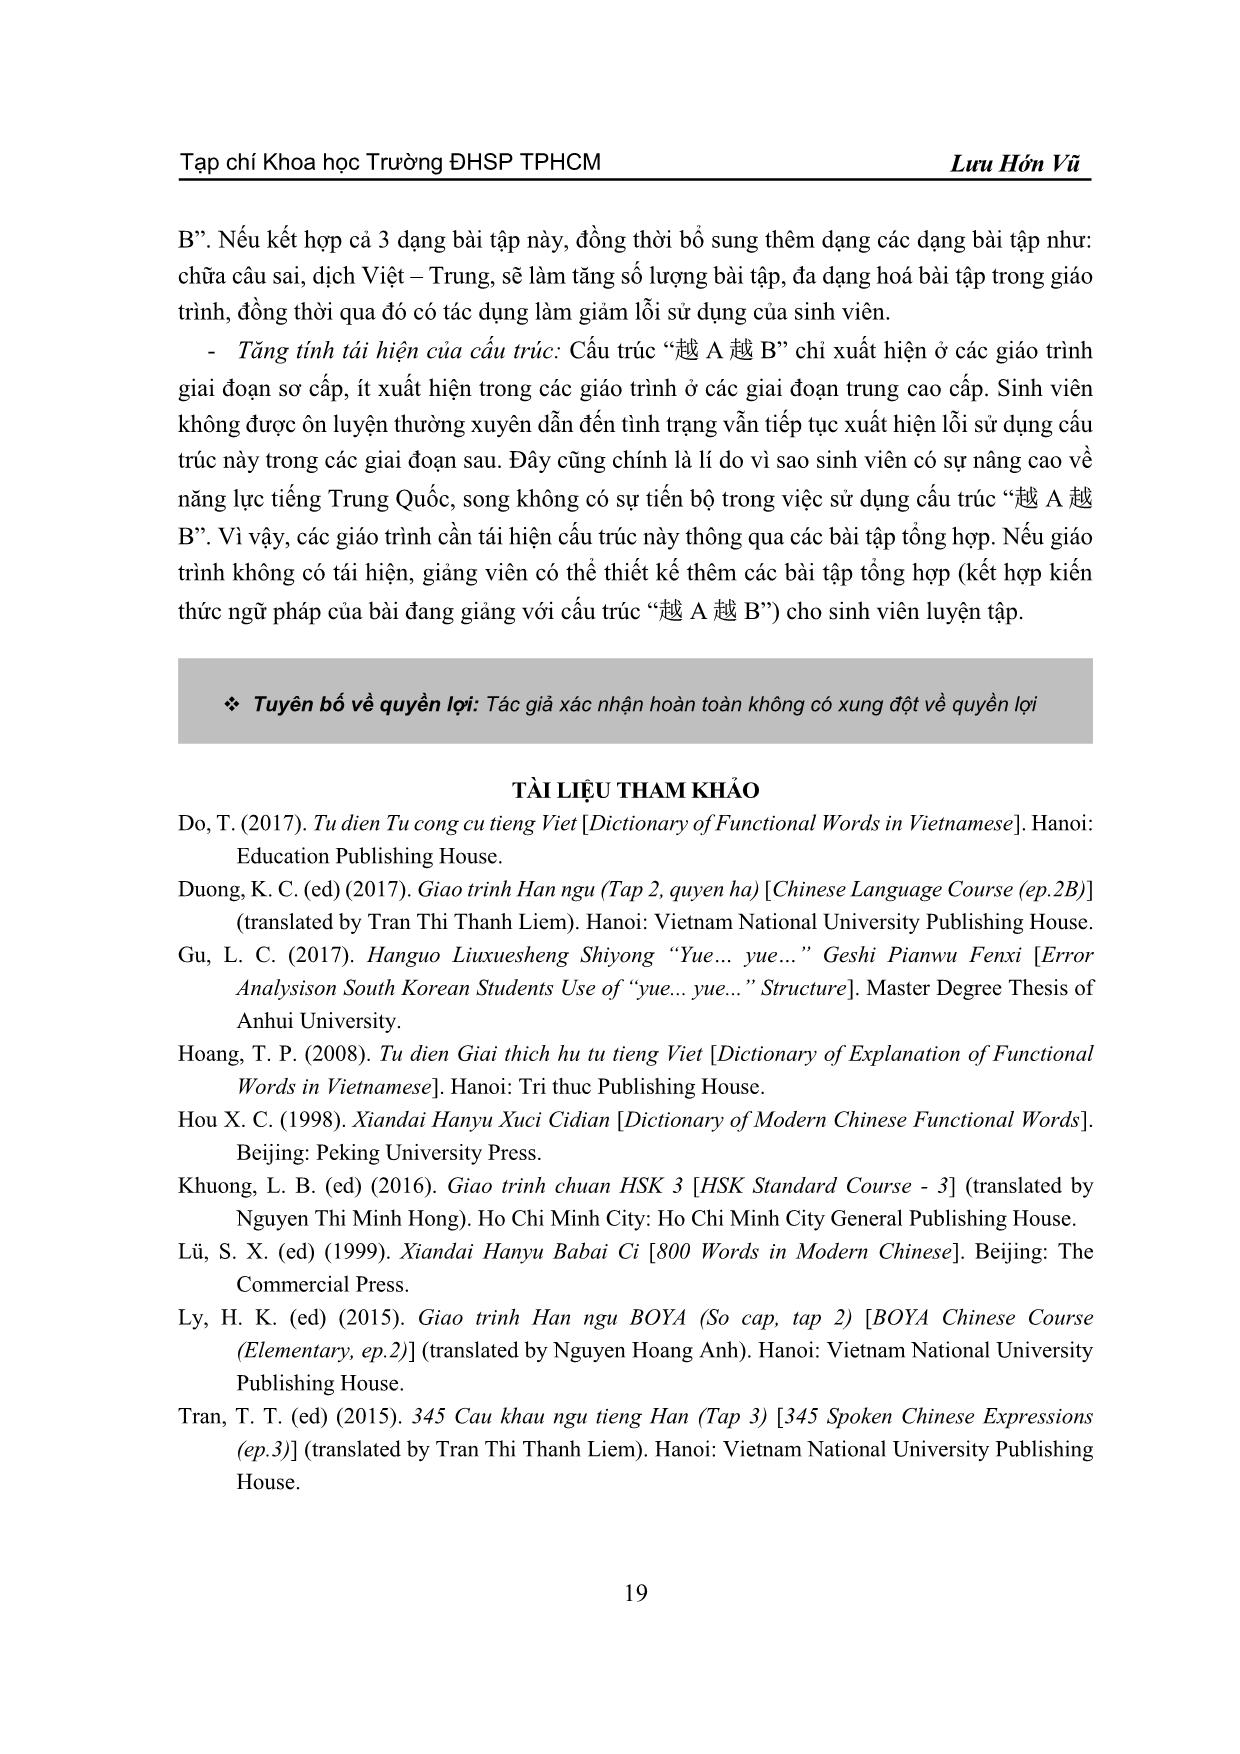 Phân tích lỗi sử dụng cấu trúc “yue A yue B” (越 A 越 B) của sinh viên Việt Nam trang 7